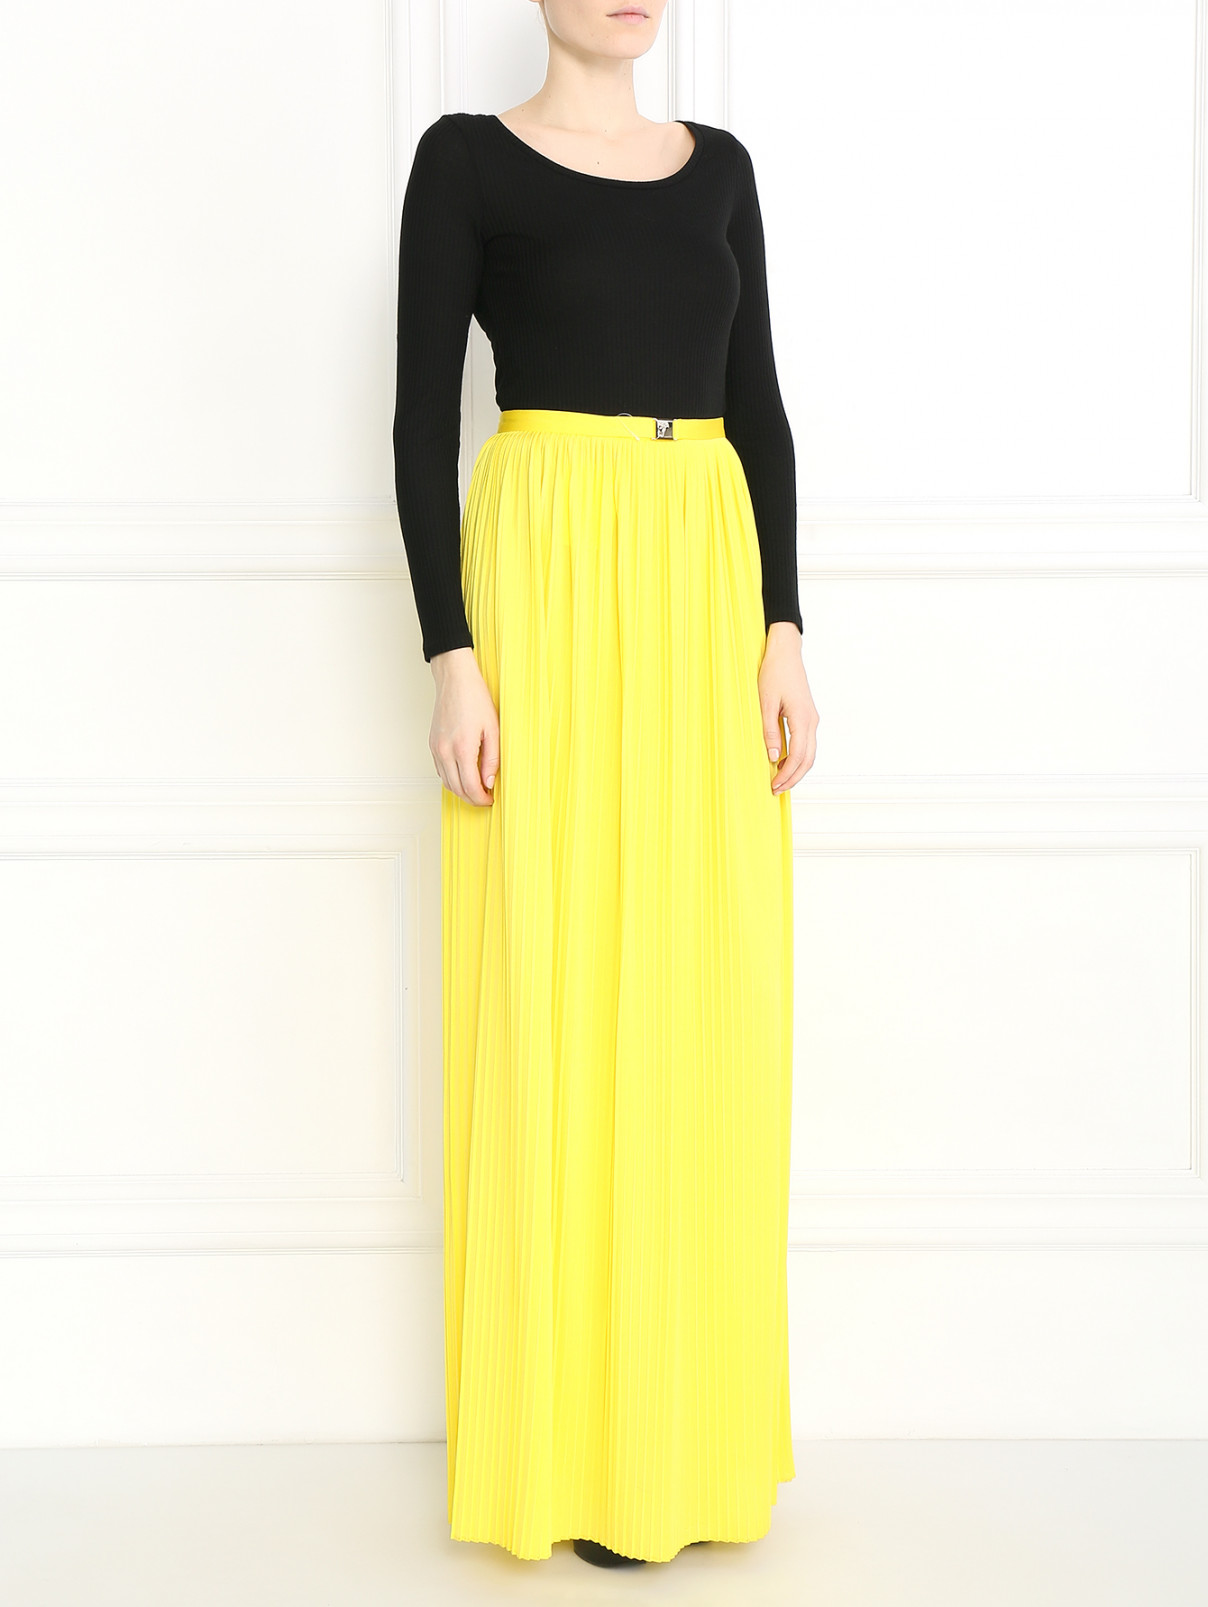 Плиссированная юбка-макси с металлической фурнитурой Versace Collection  –  Модель Общий вид  – Цвет:  Желтый